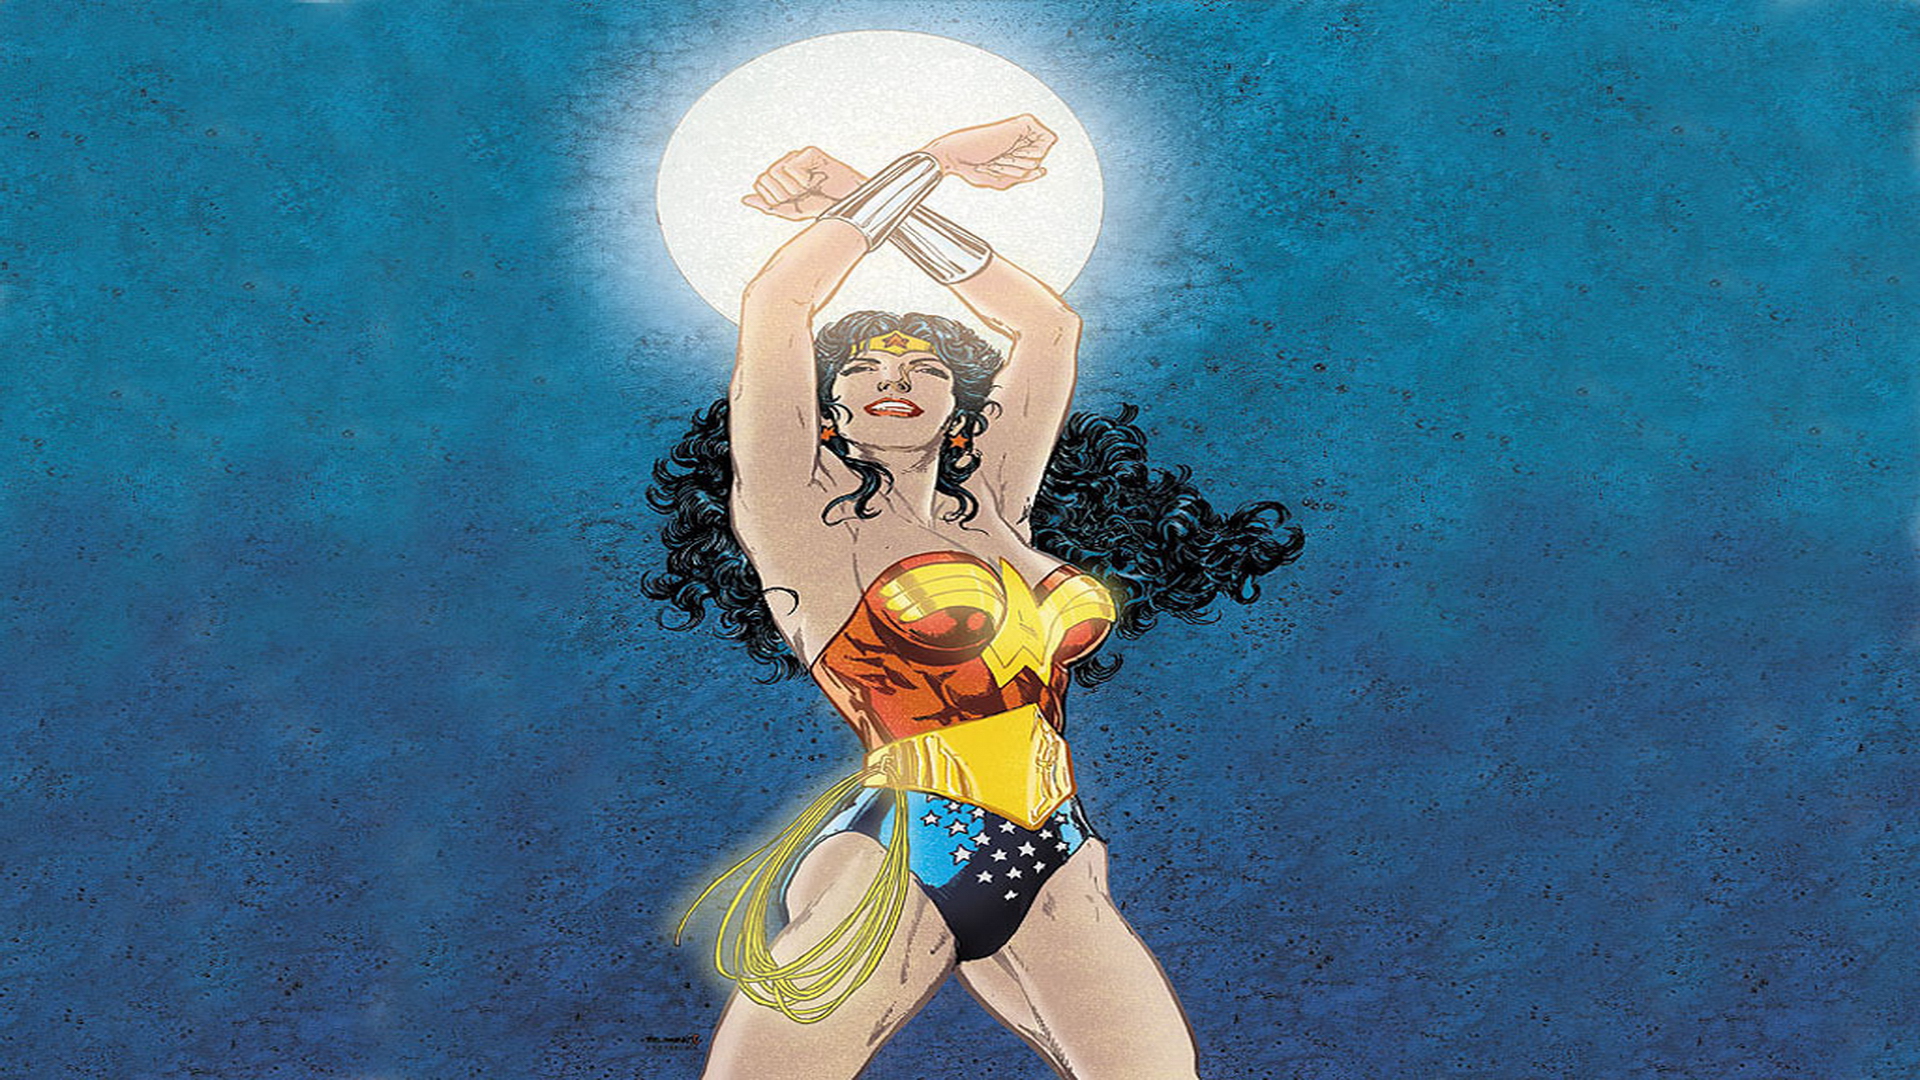 Wonder Woman dc comics Wallpaper HD Desktop